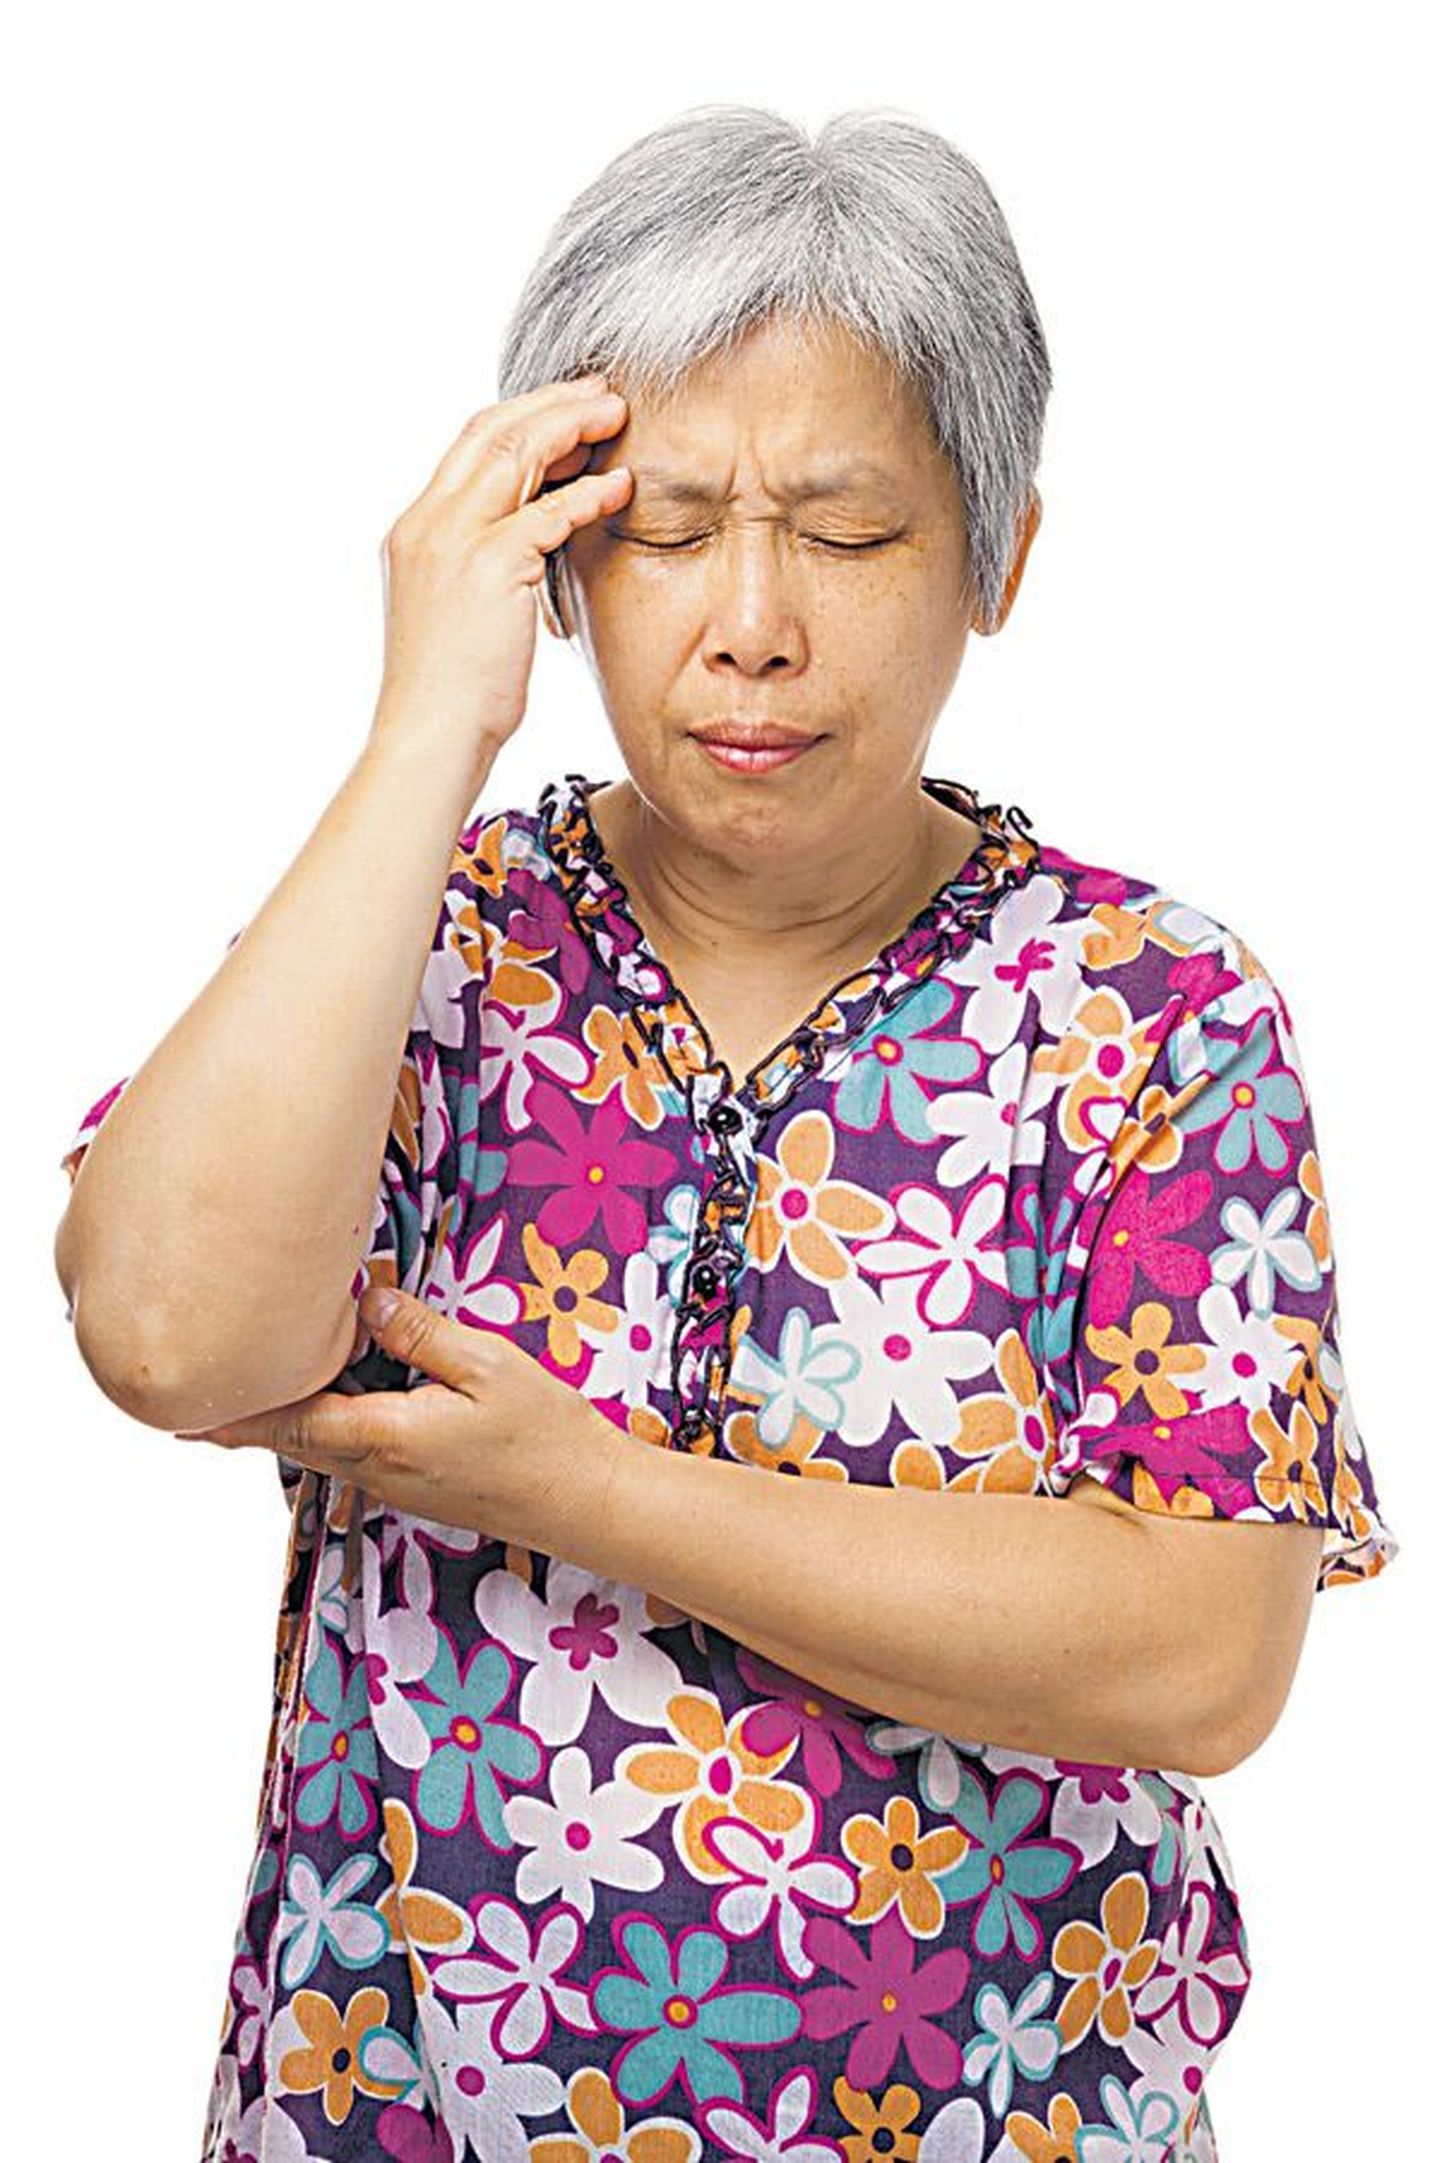 Мало кто подозревает, что приступы головной боли часто связаны с гайморитом, шейным остеохондрозом и недолеченными зубами.